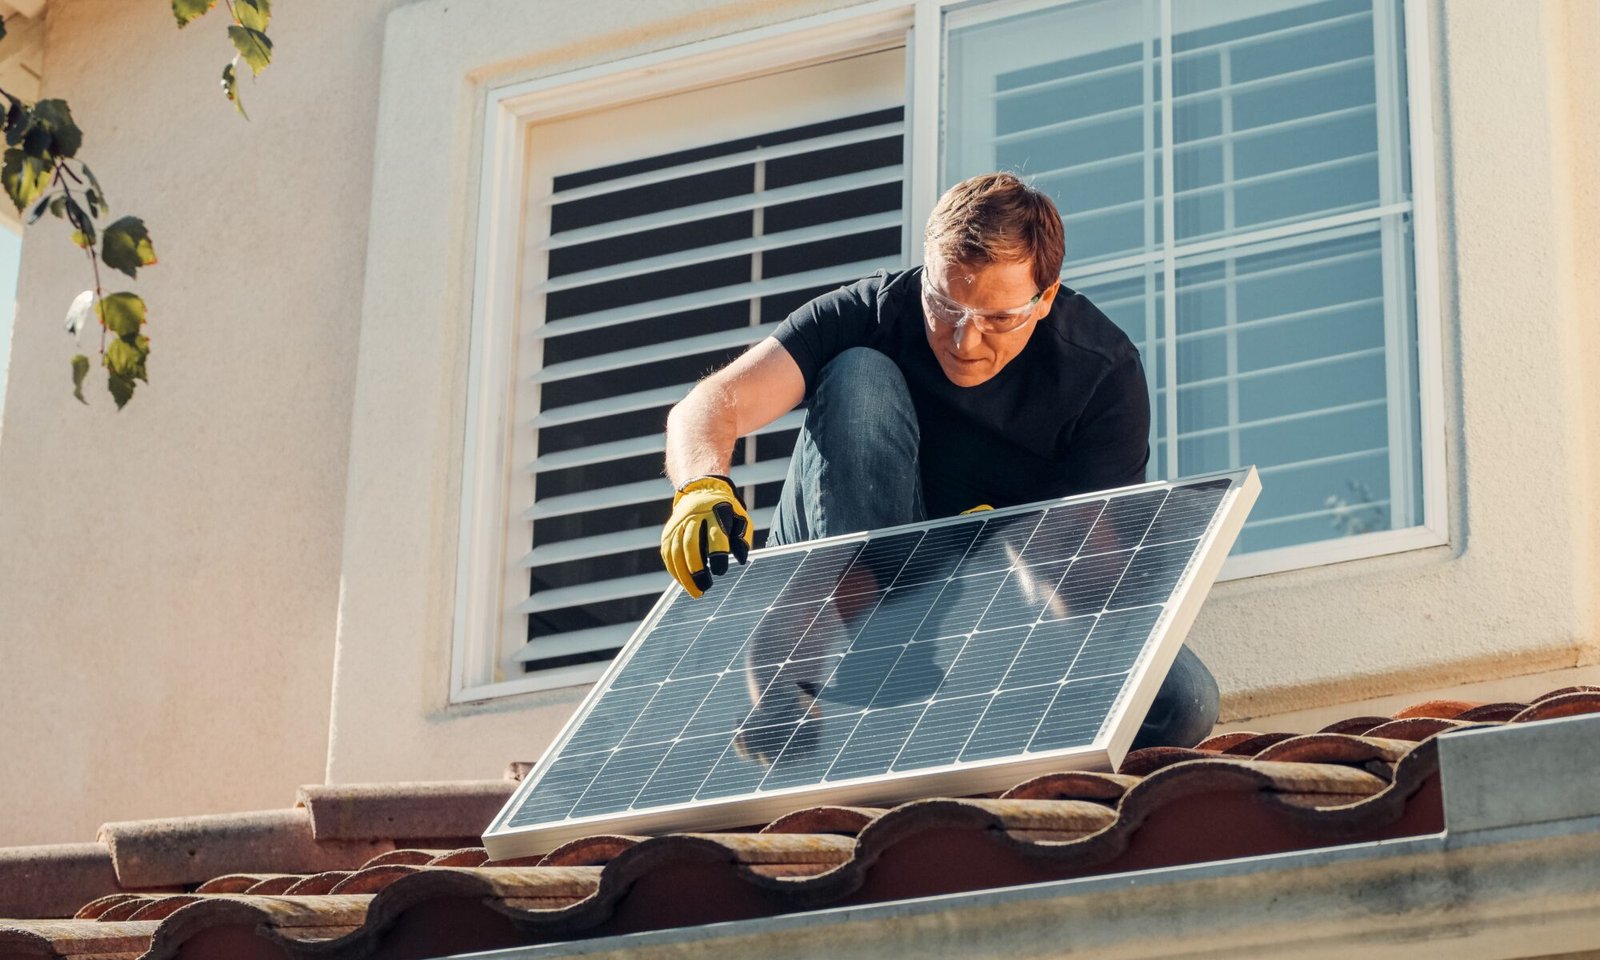 instalador subindo no telhado com placa solar para usufruir das vantagens da energia solar